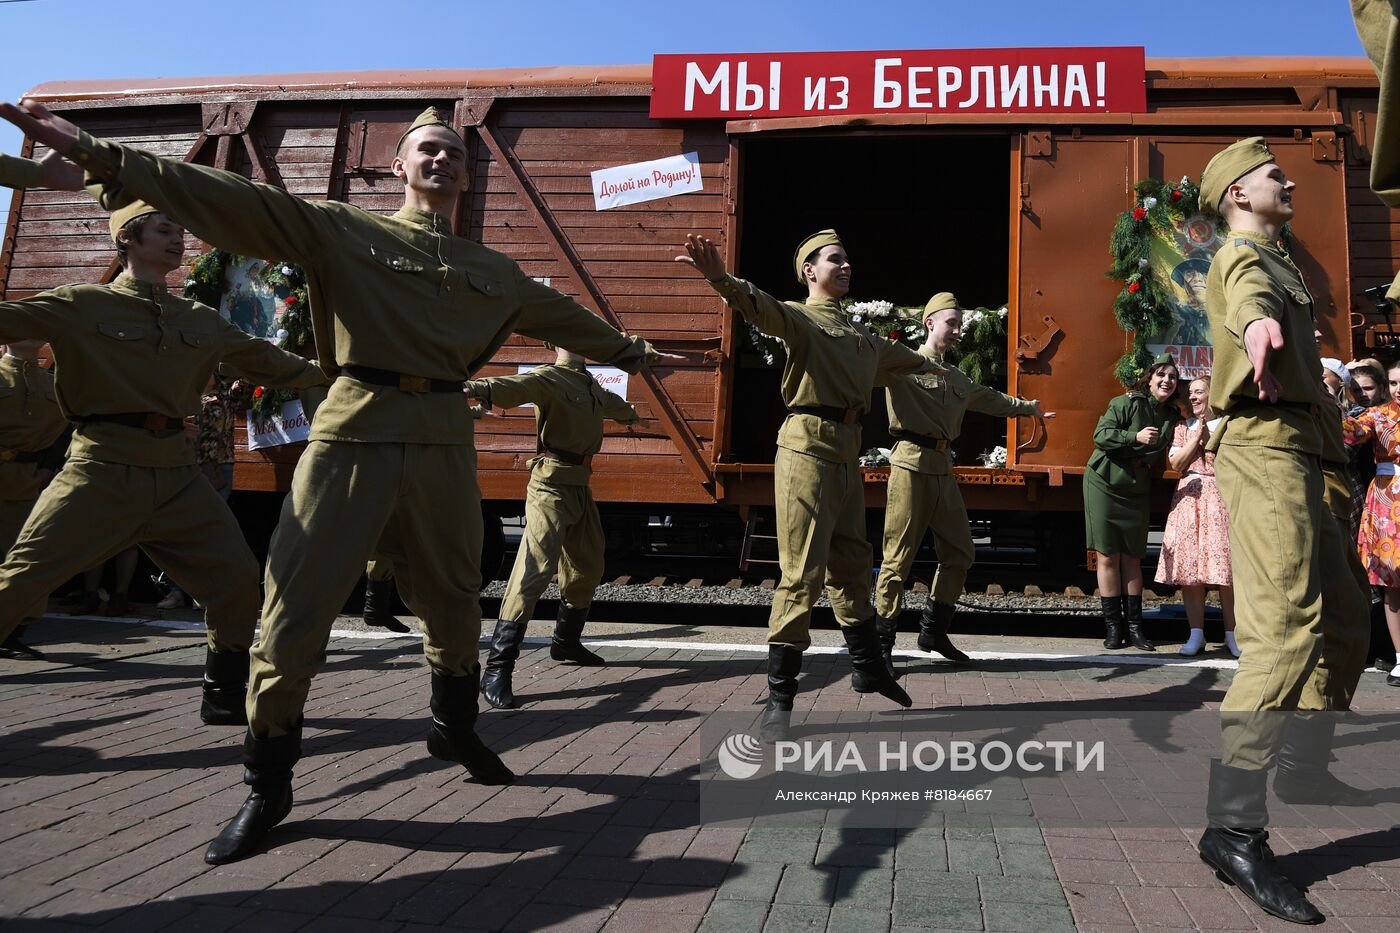 Встреча ретро-поезда "Эшелон Победы" в Новосибирске